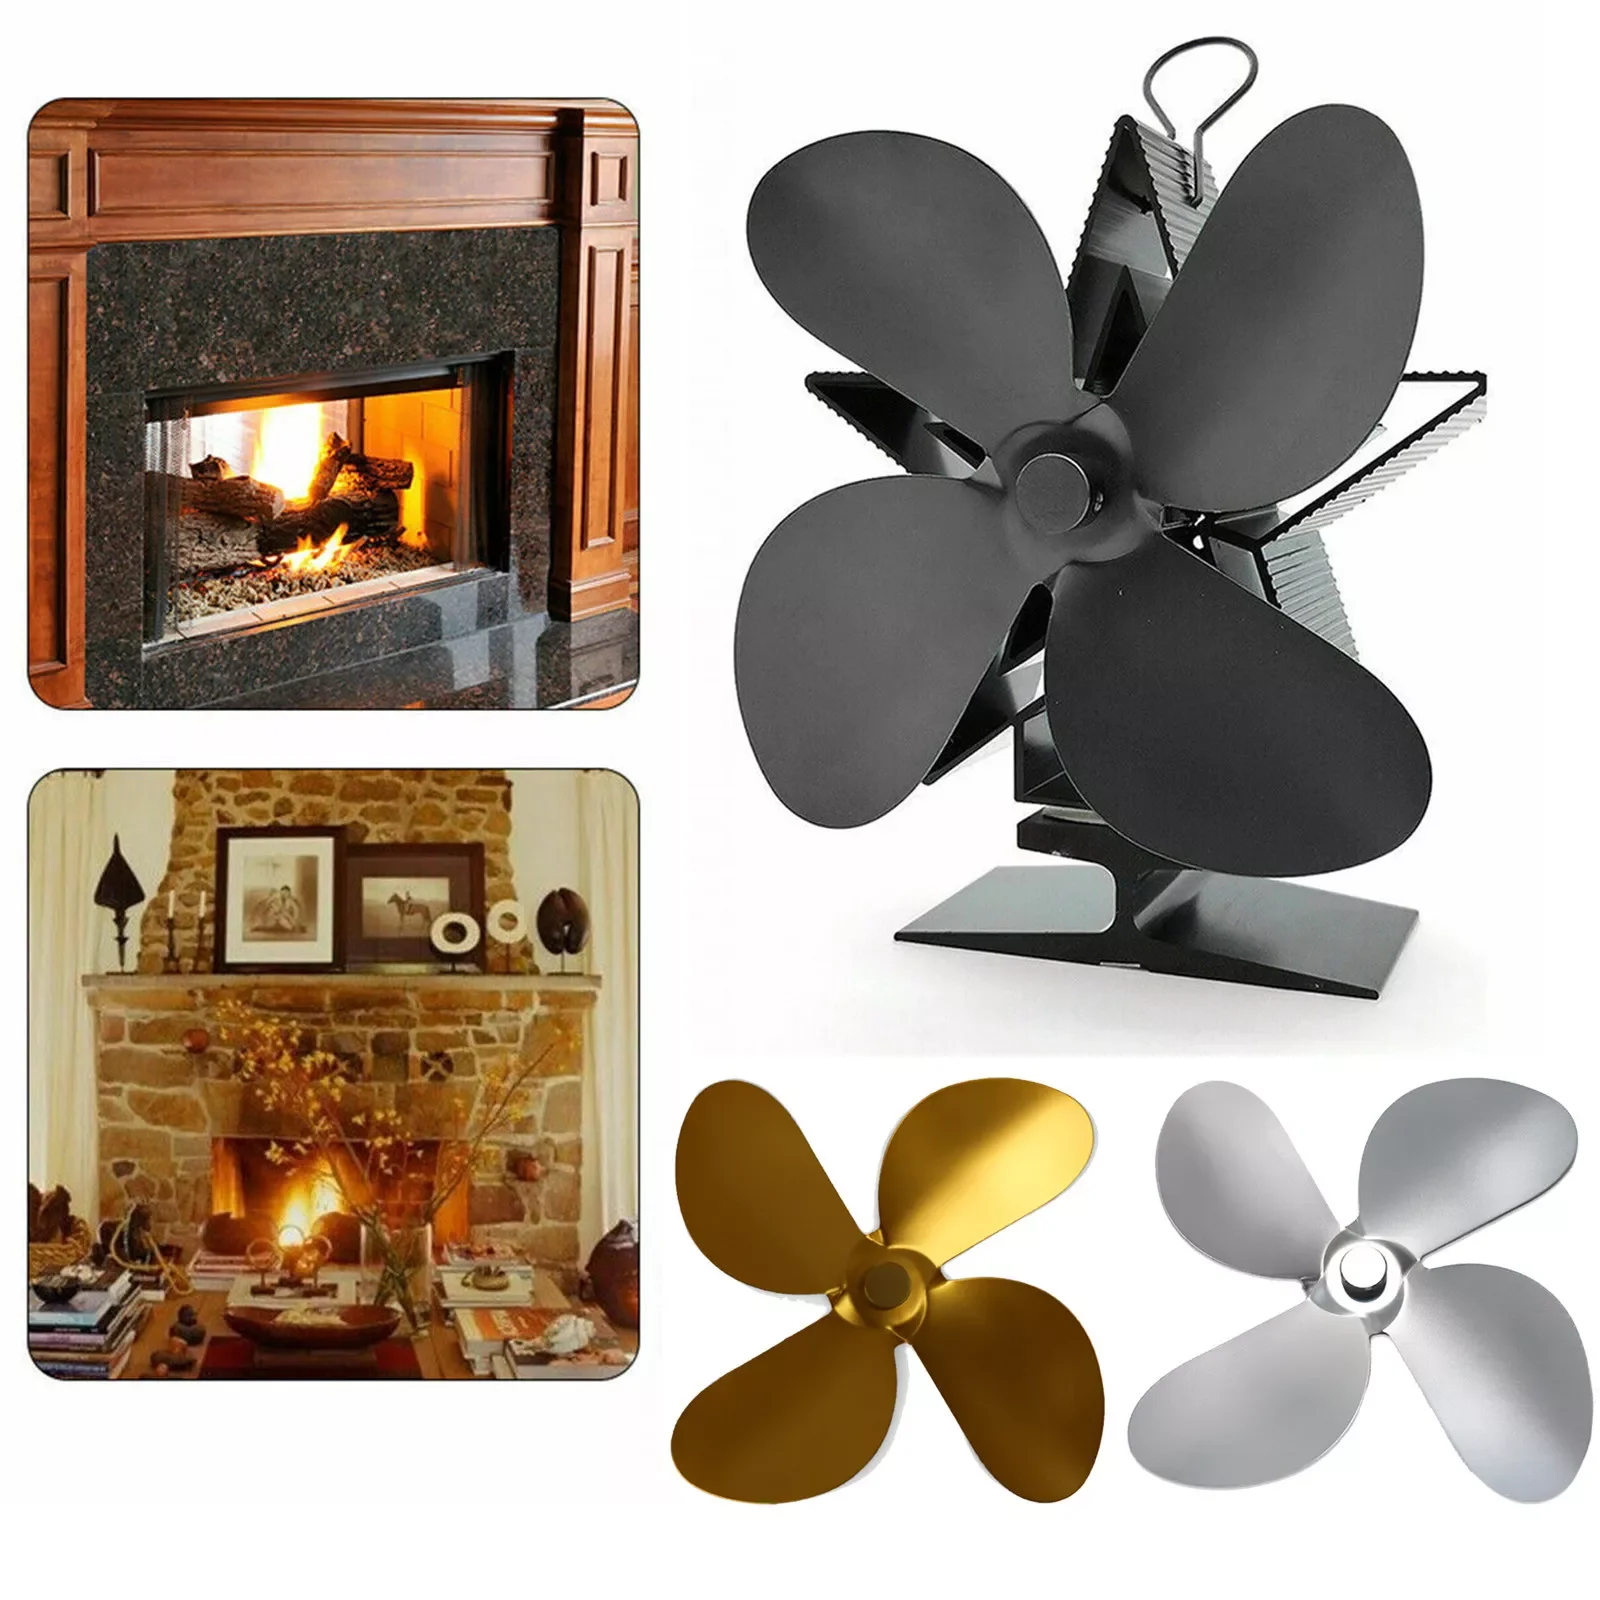 

Вентилятор для дровяной плиты Blade Black вентилятор для камина Leaf Heat, деревянная горелка для камина, аксессуары для телефона, эффективное распр...